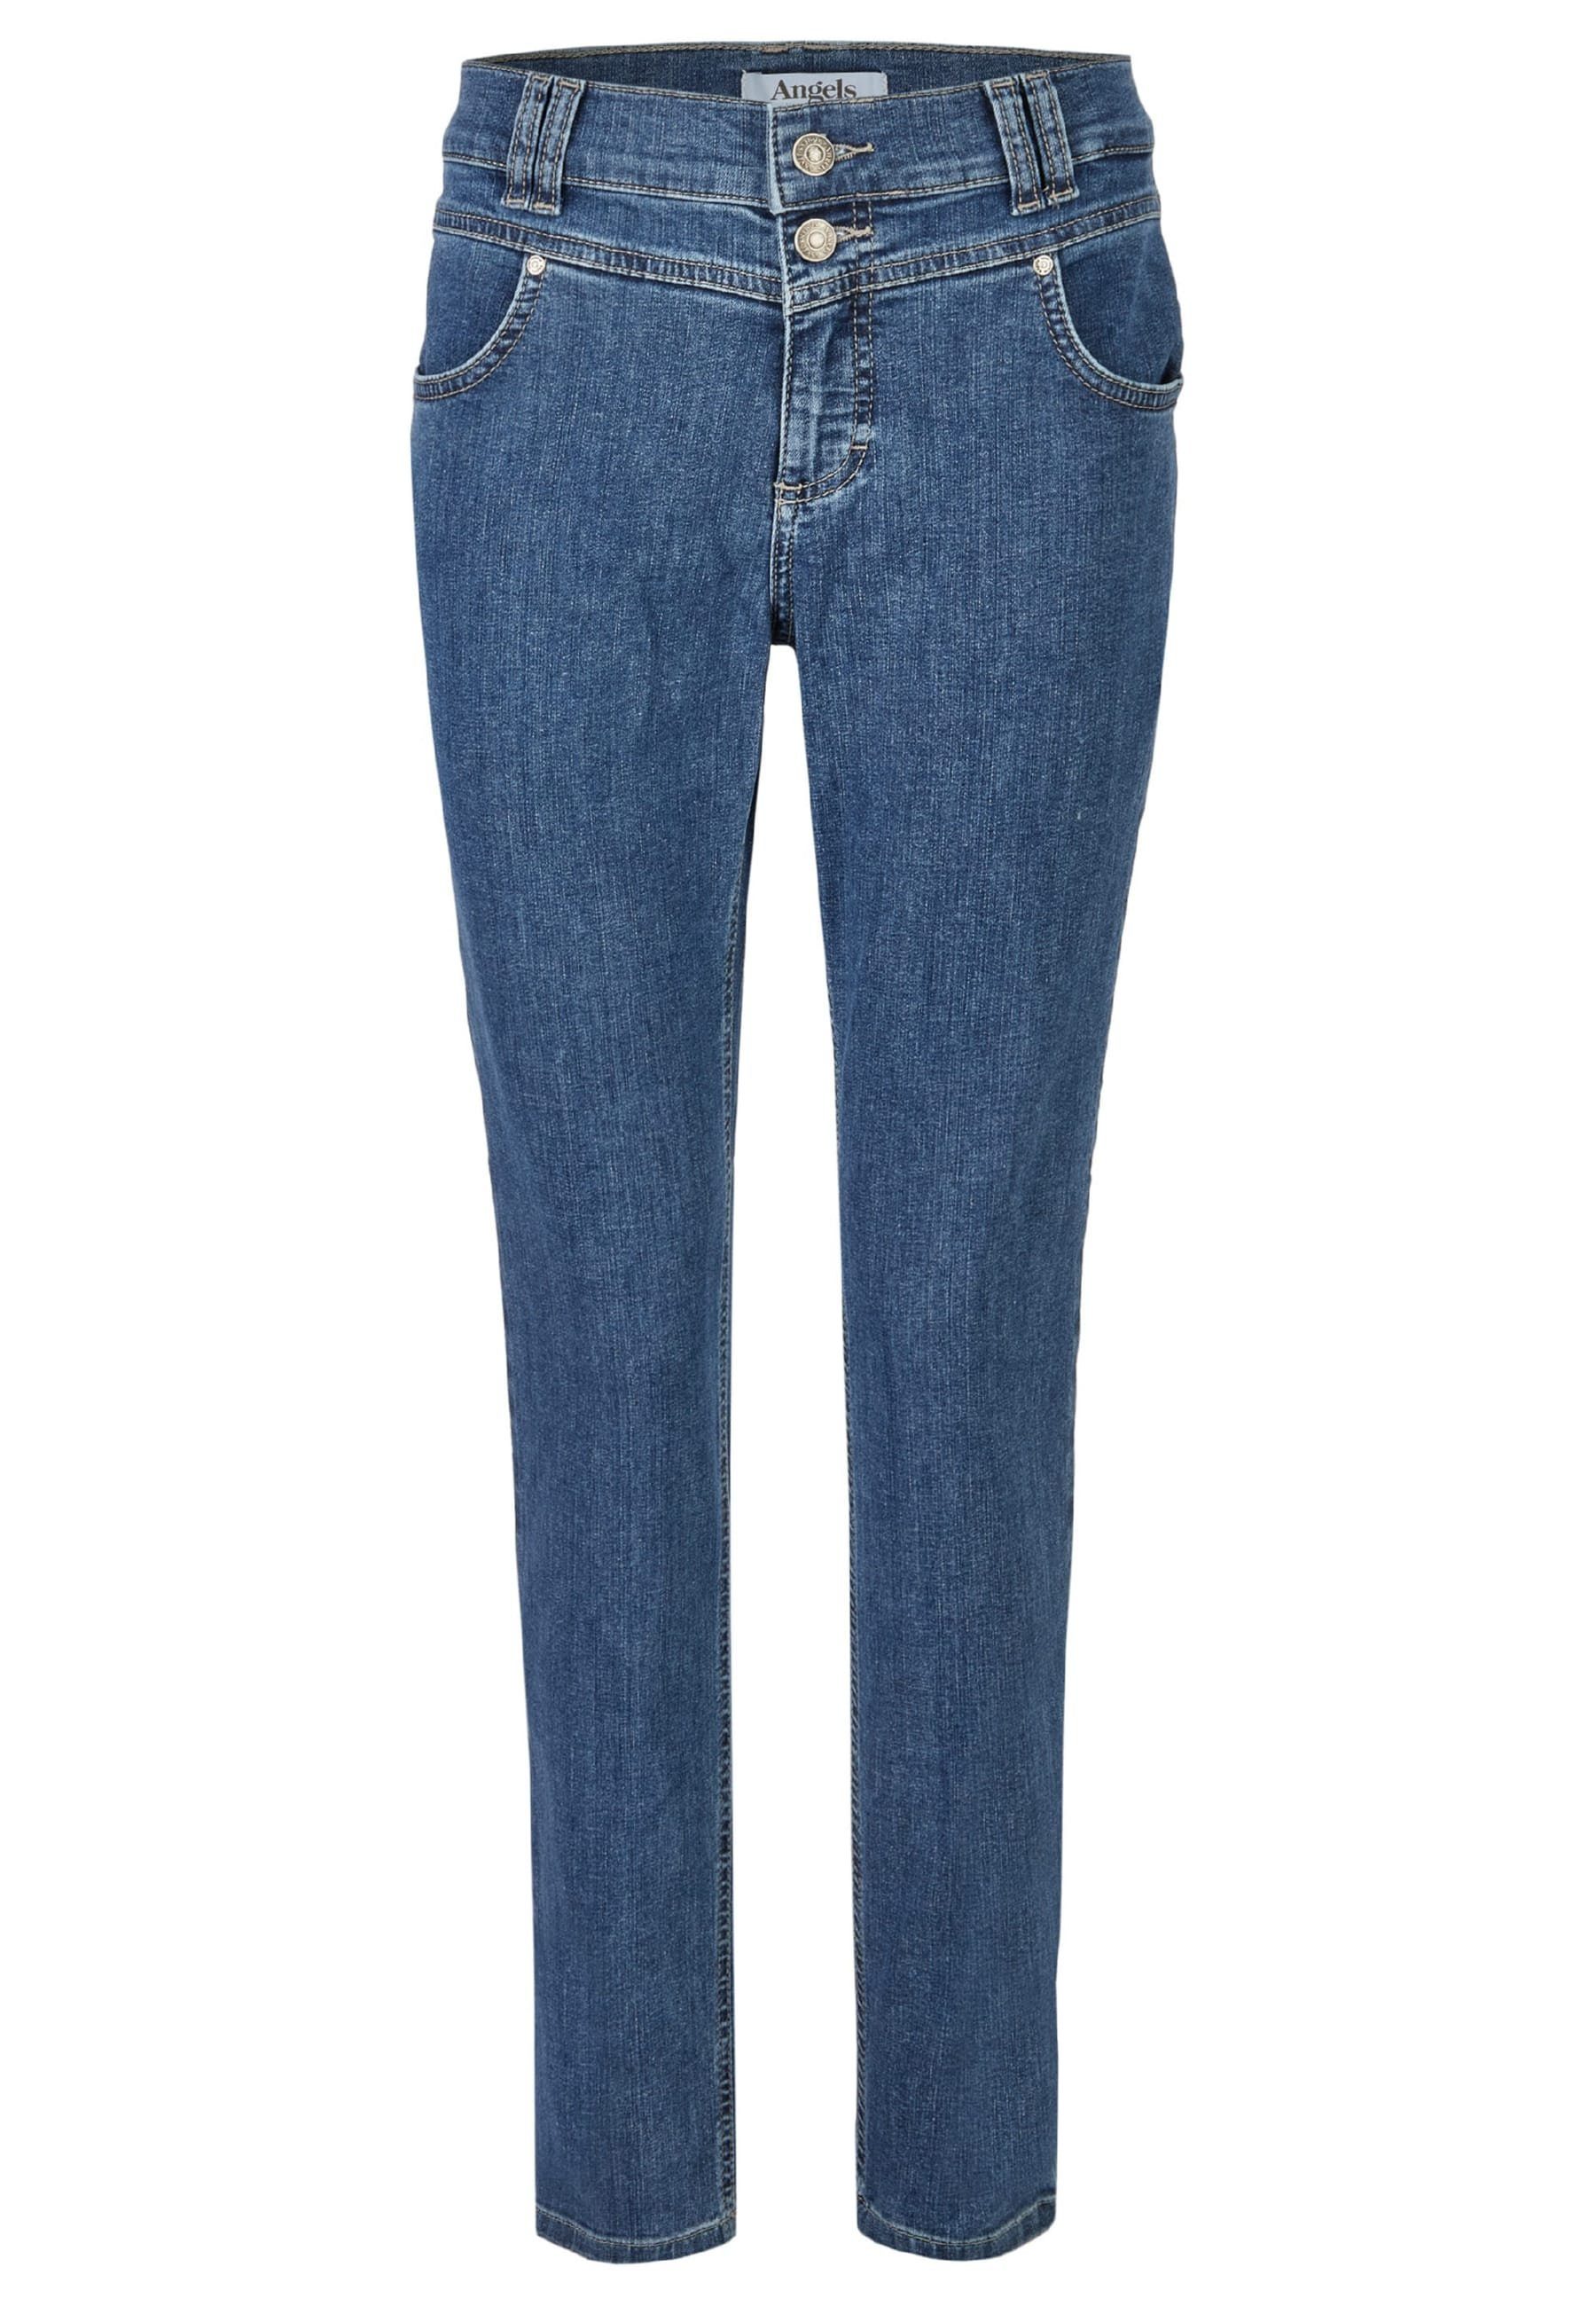 ANGELS Slim-fit-Jeans Jeans Skinny Button mit authentischem Denim mittelblau